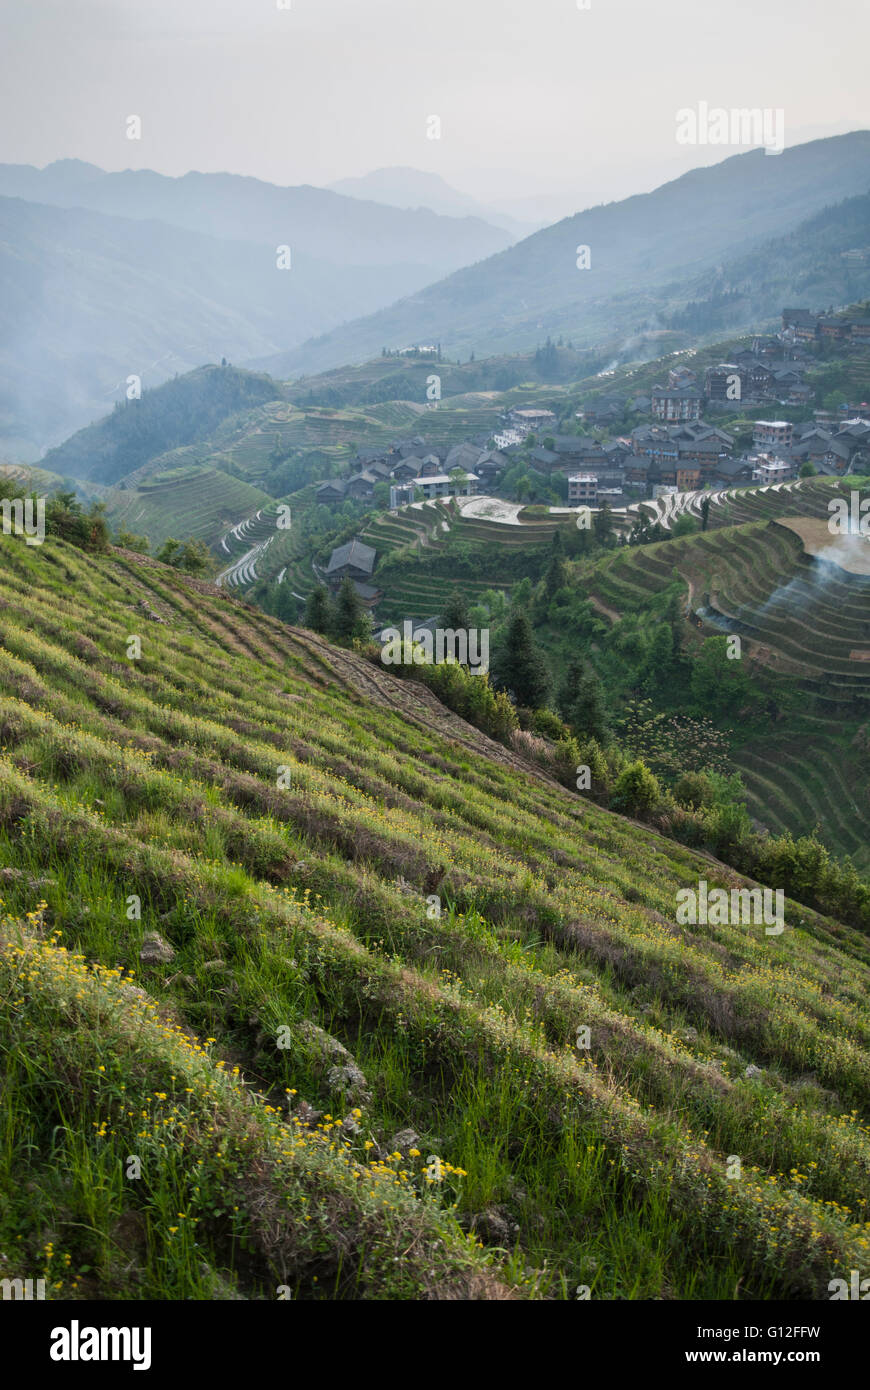 Landscape of Longsheng Rice Terraces, China Stock Photo